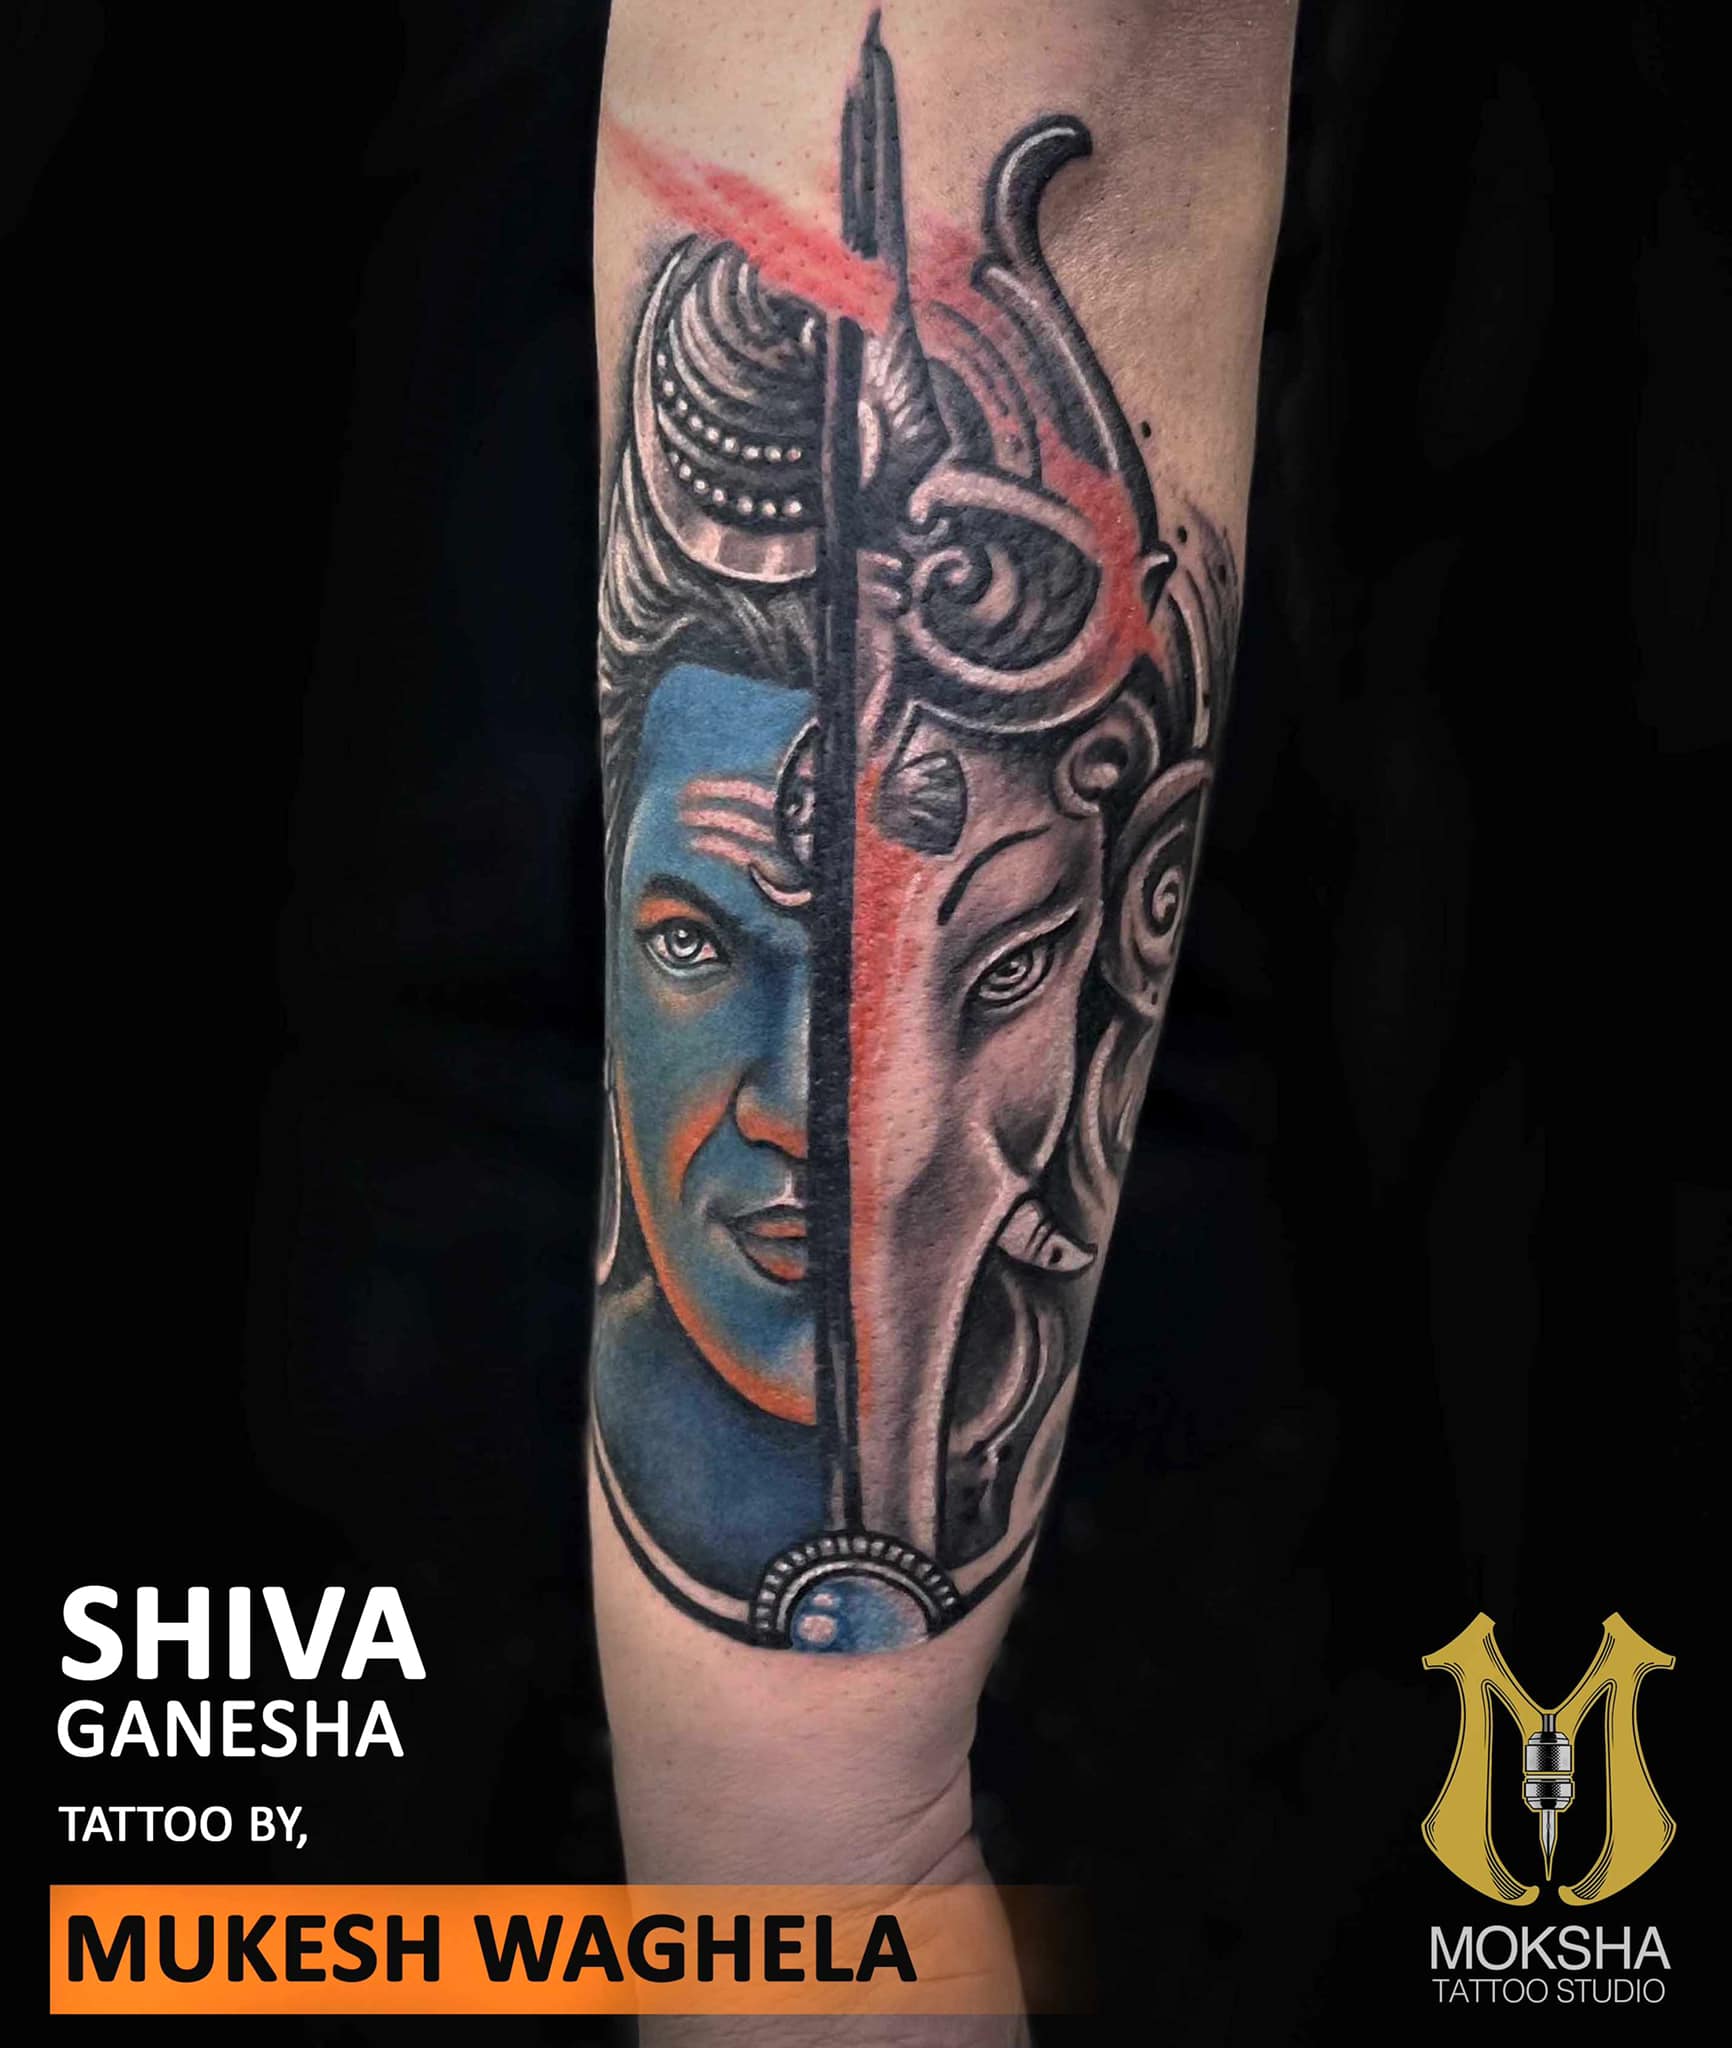 Tattoo uploaded by Samurai Tattoo mehsana • Trishul with on tattoo |om  tattoo |mahadev tattoo |Shiva tattoo • Tattoodo